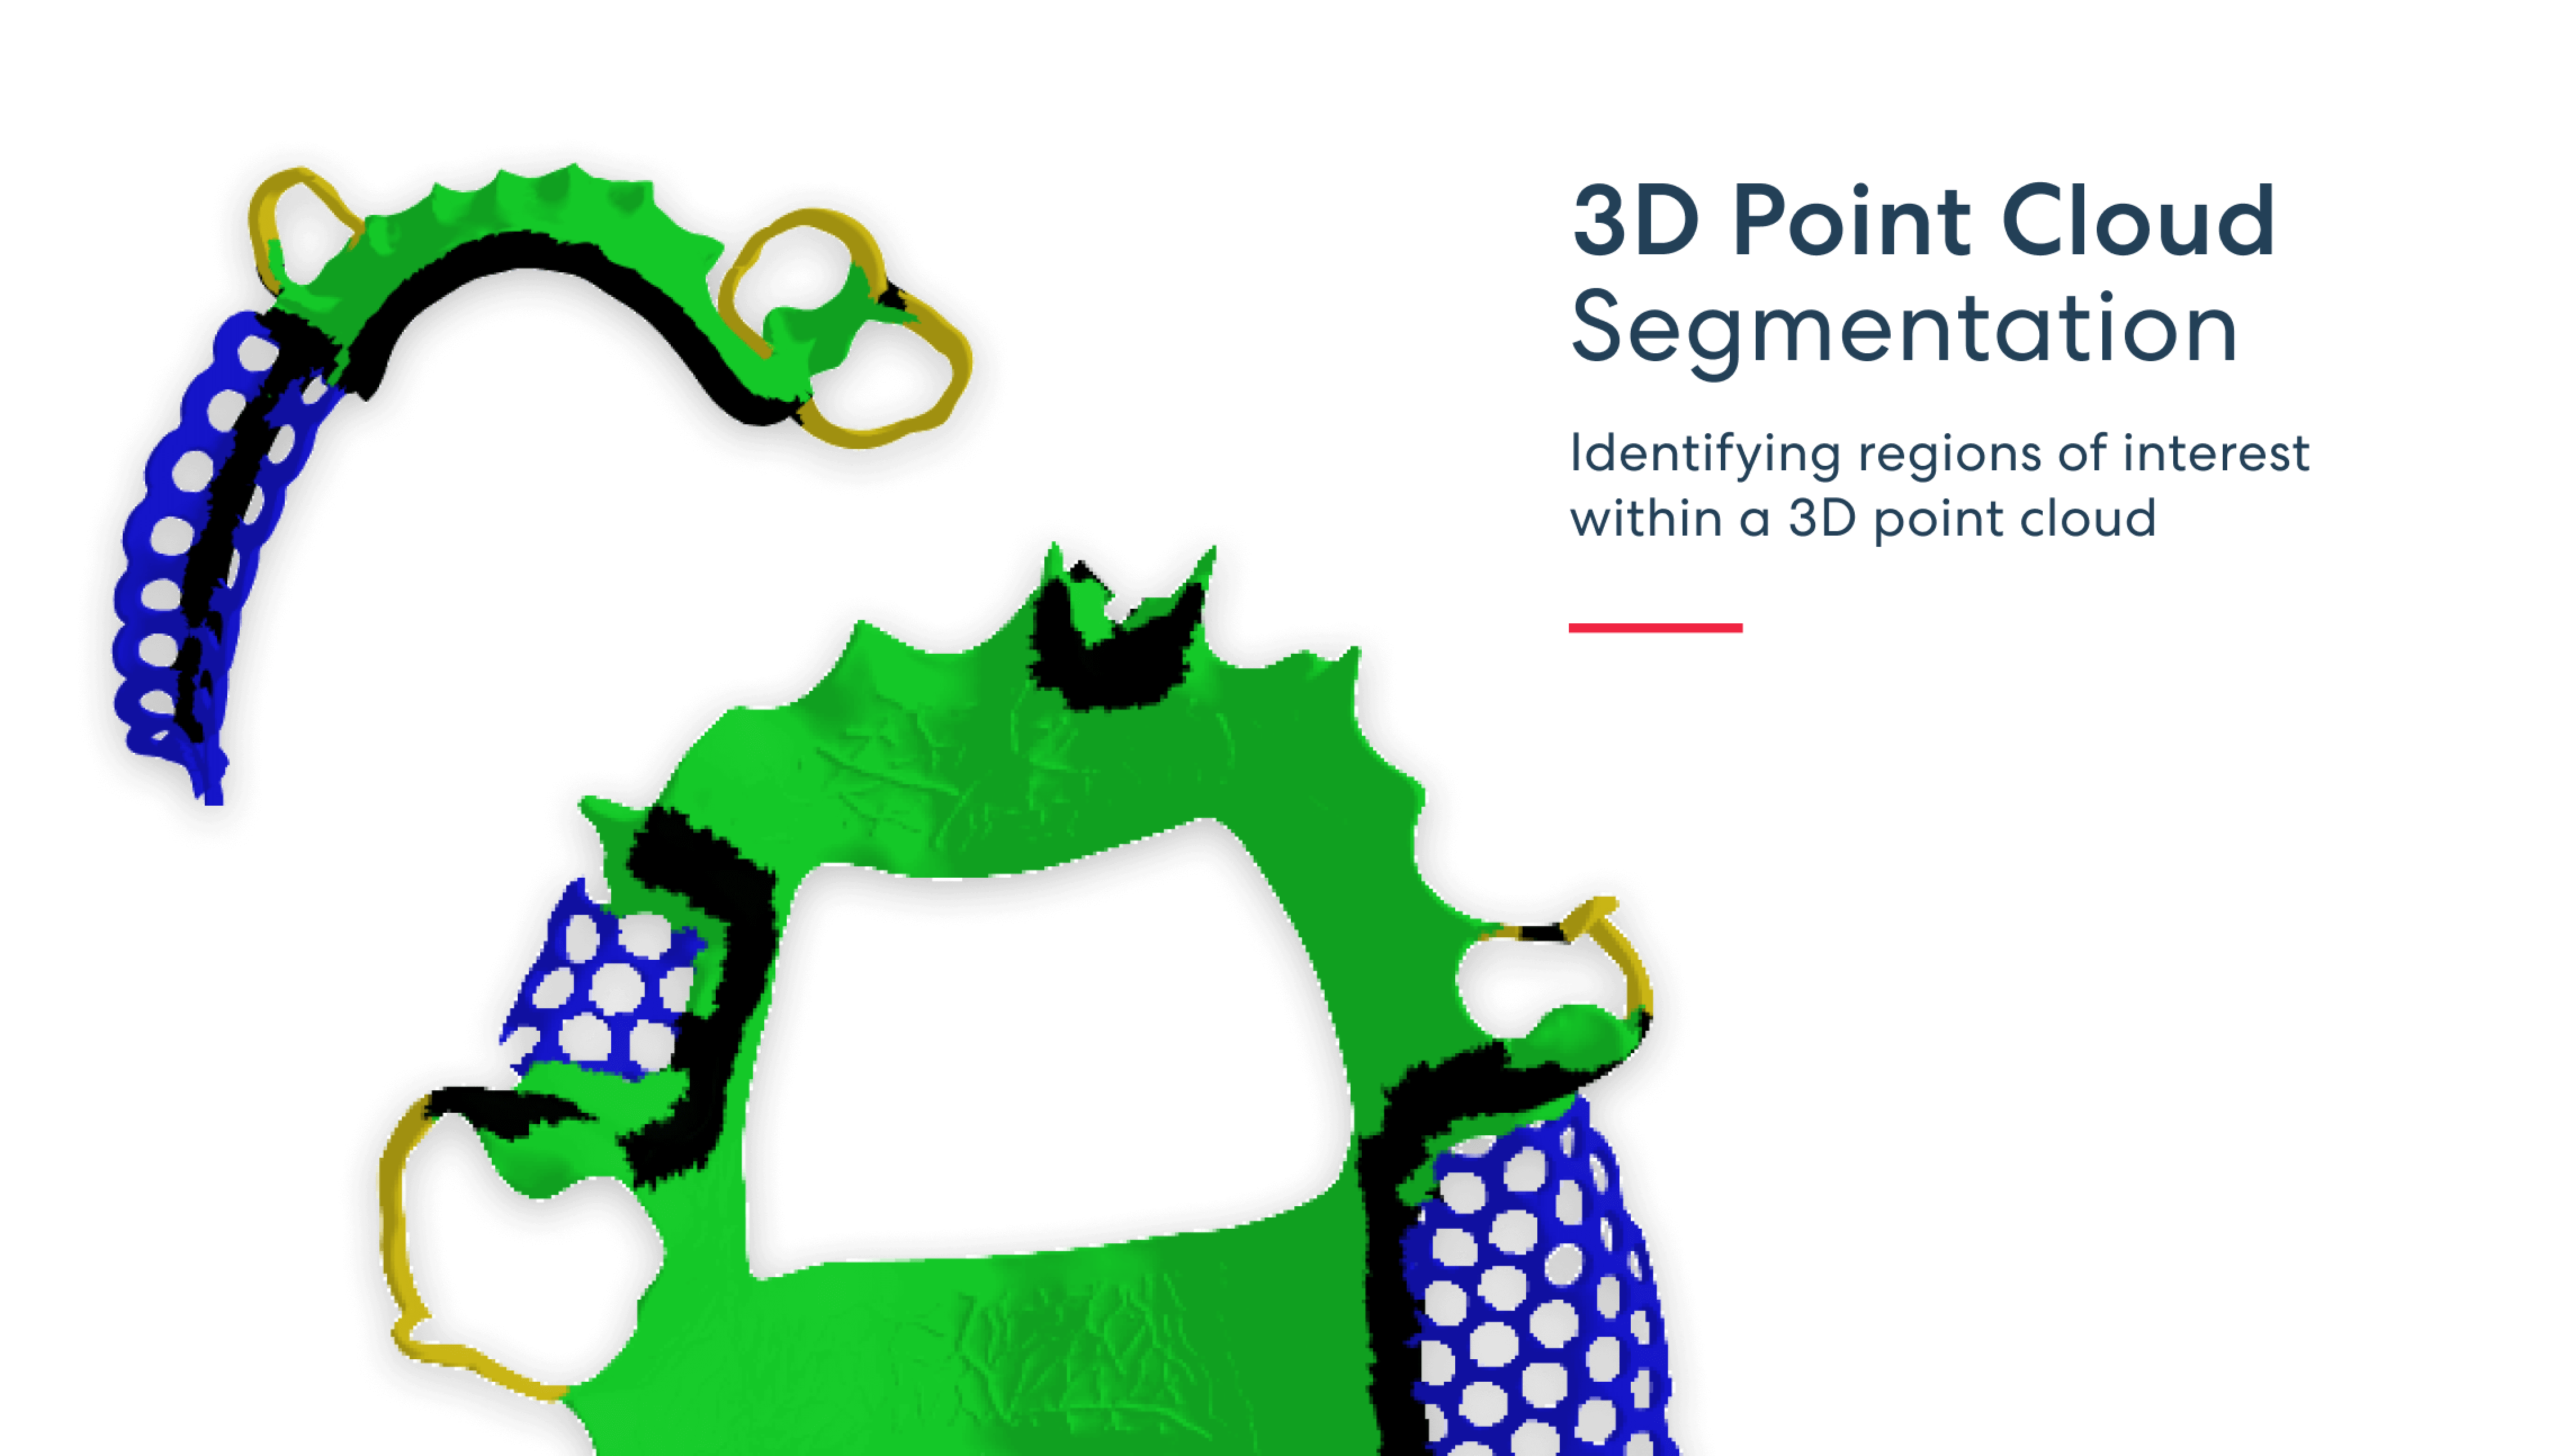 3D ポイント クラウド セグメンテーション - 3D ポイント クラウド内の関心領域の識別